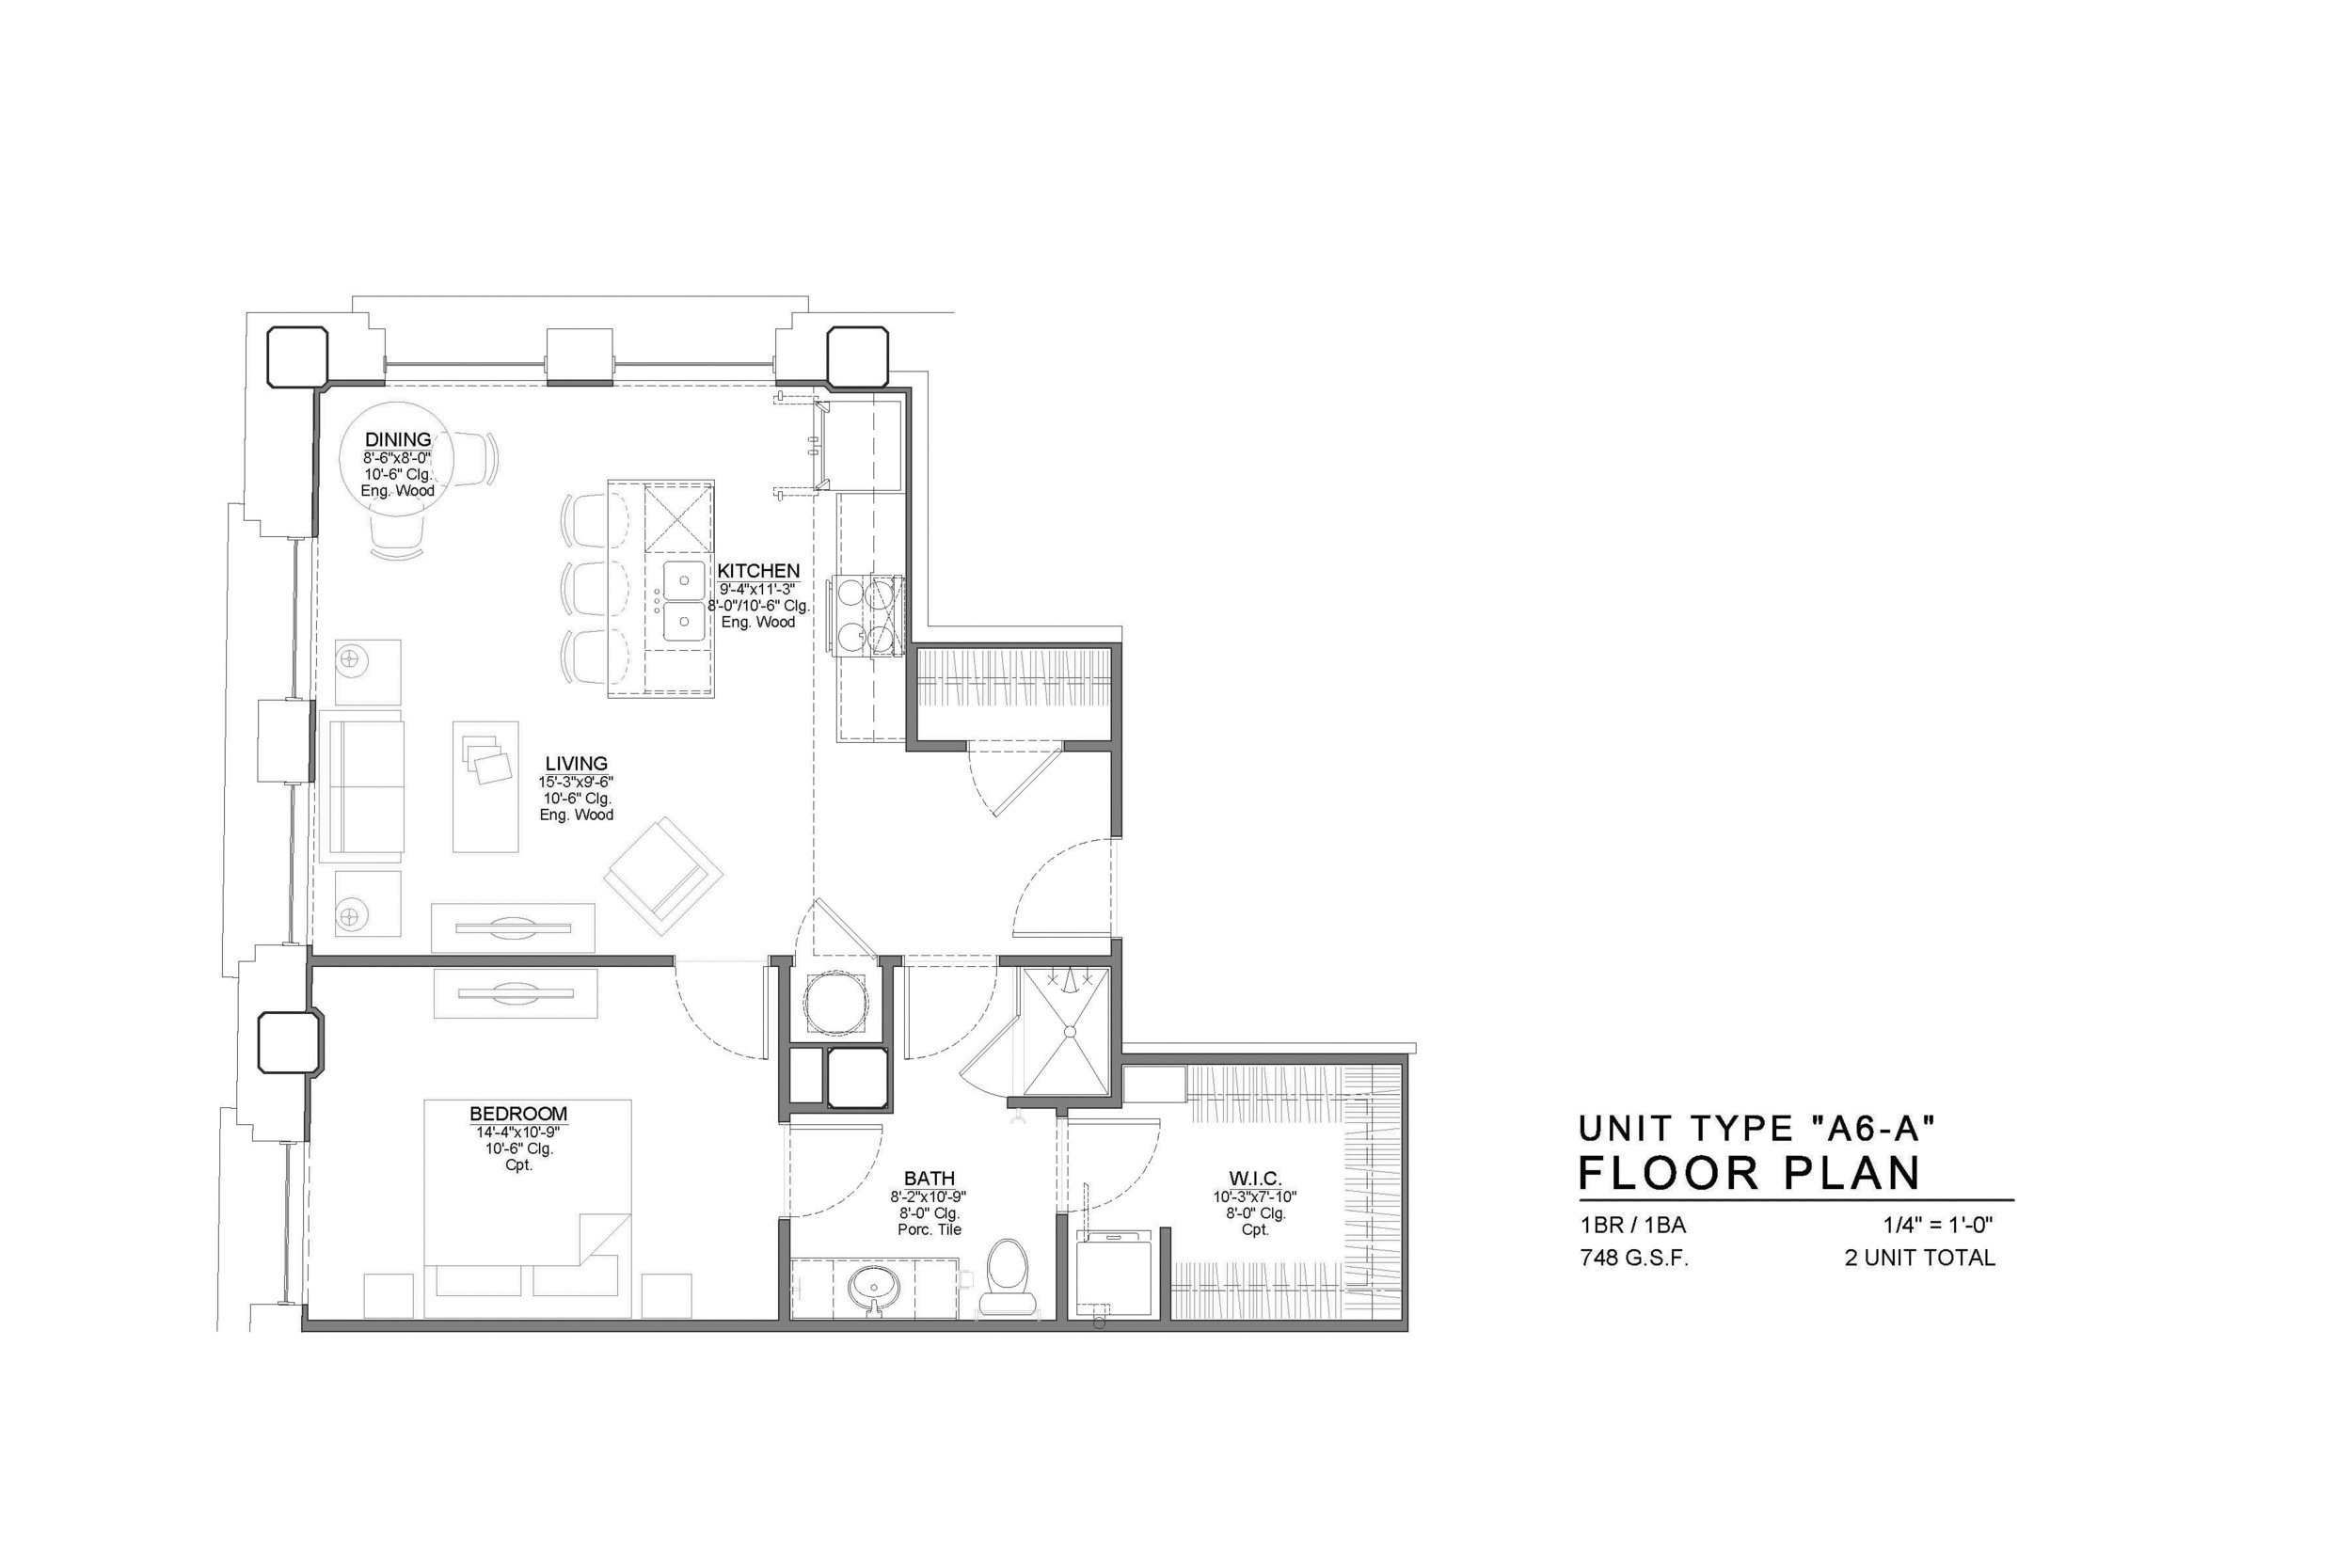 A6-A FLOOR PLAN: 1 BEDROOM / 1 BATH